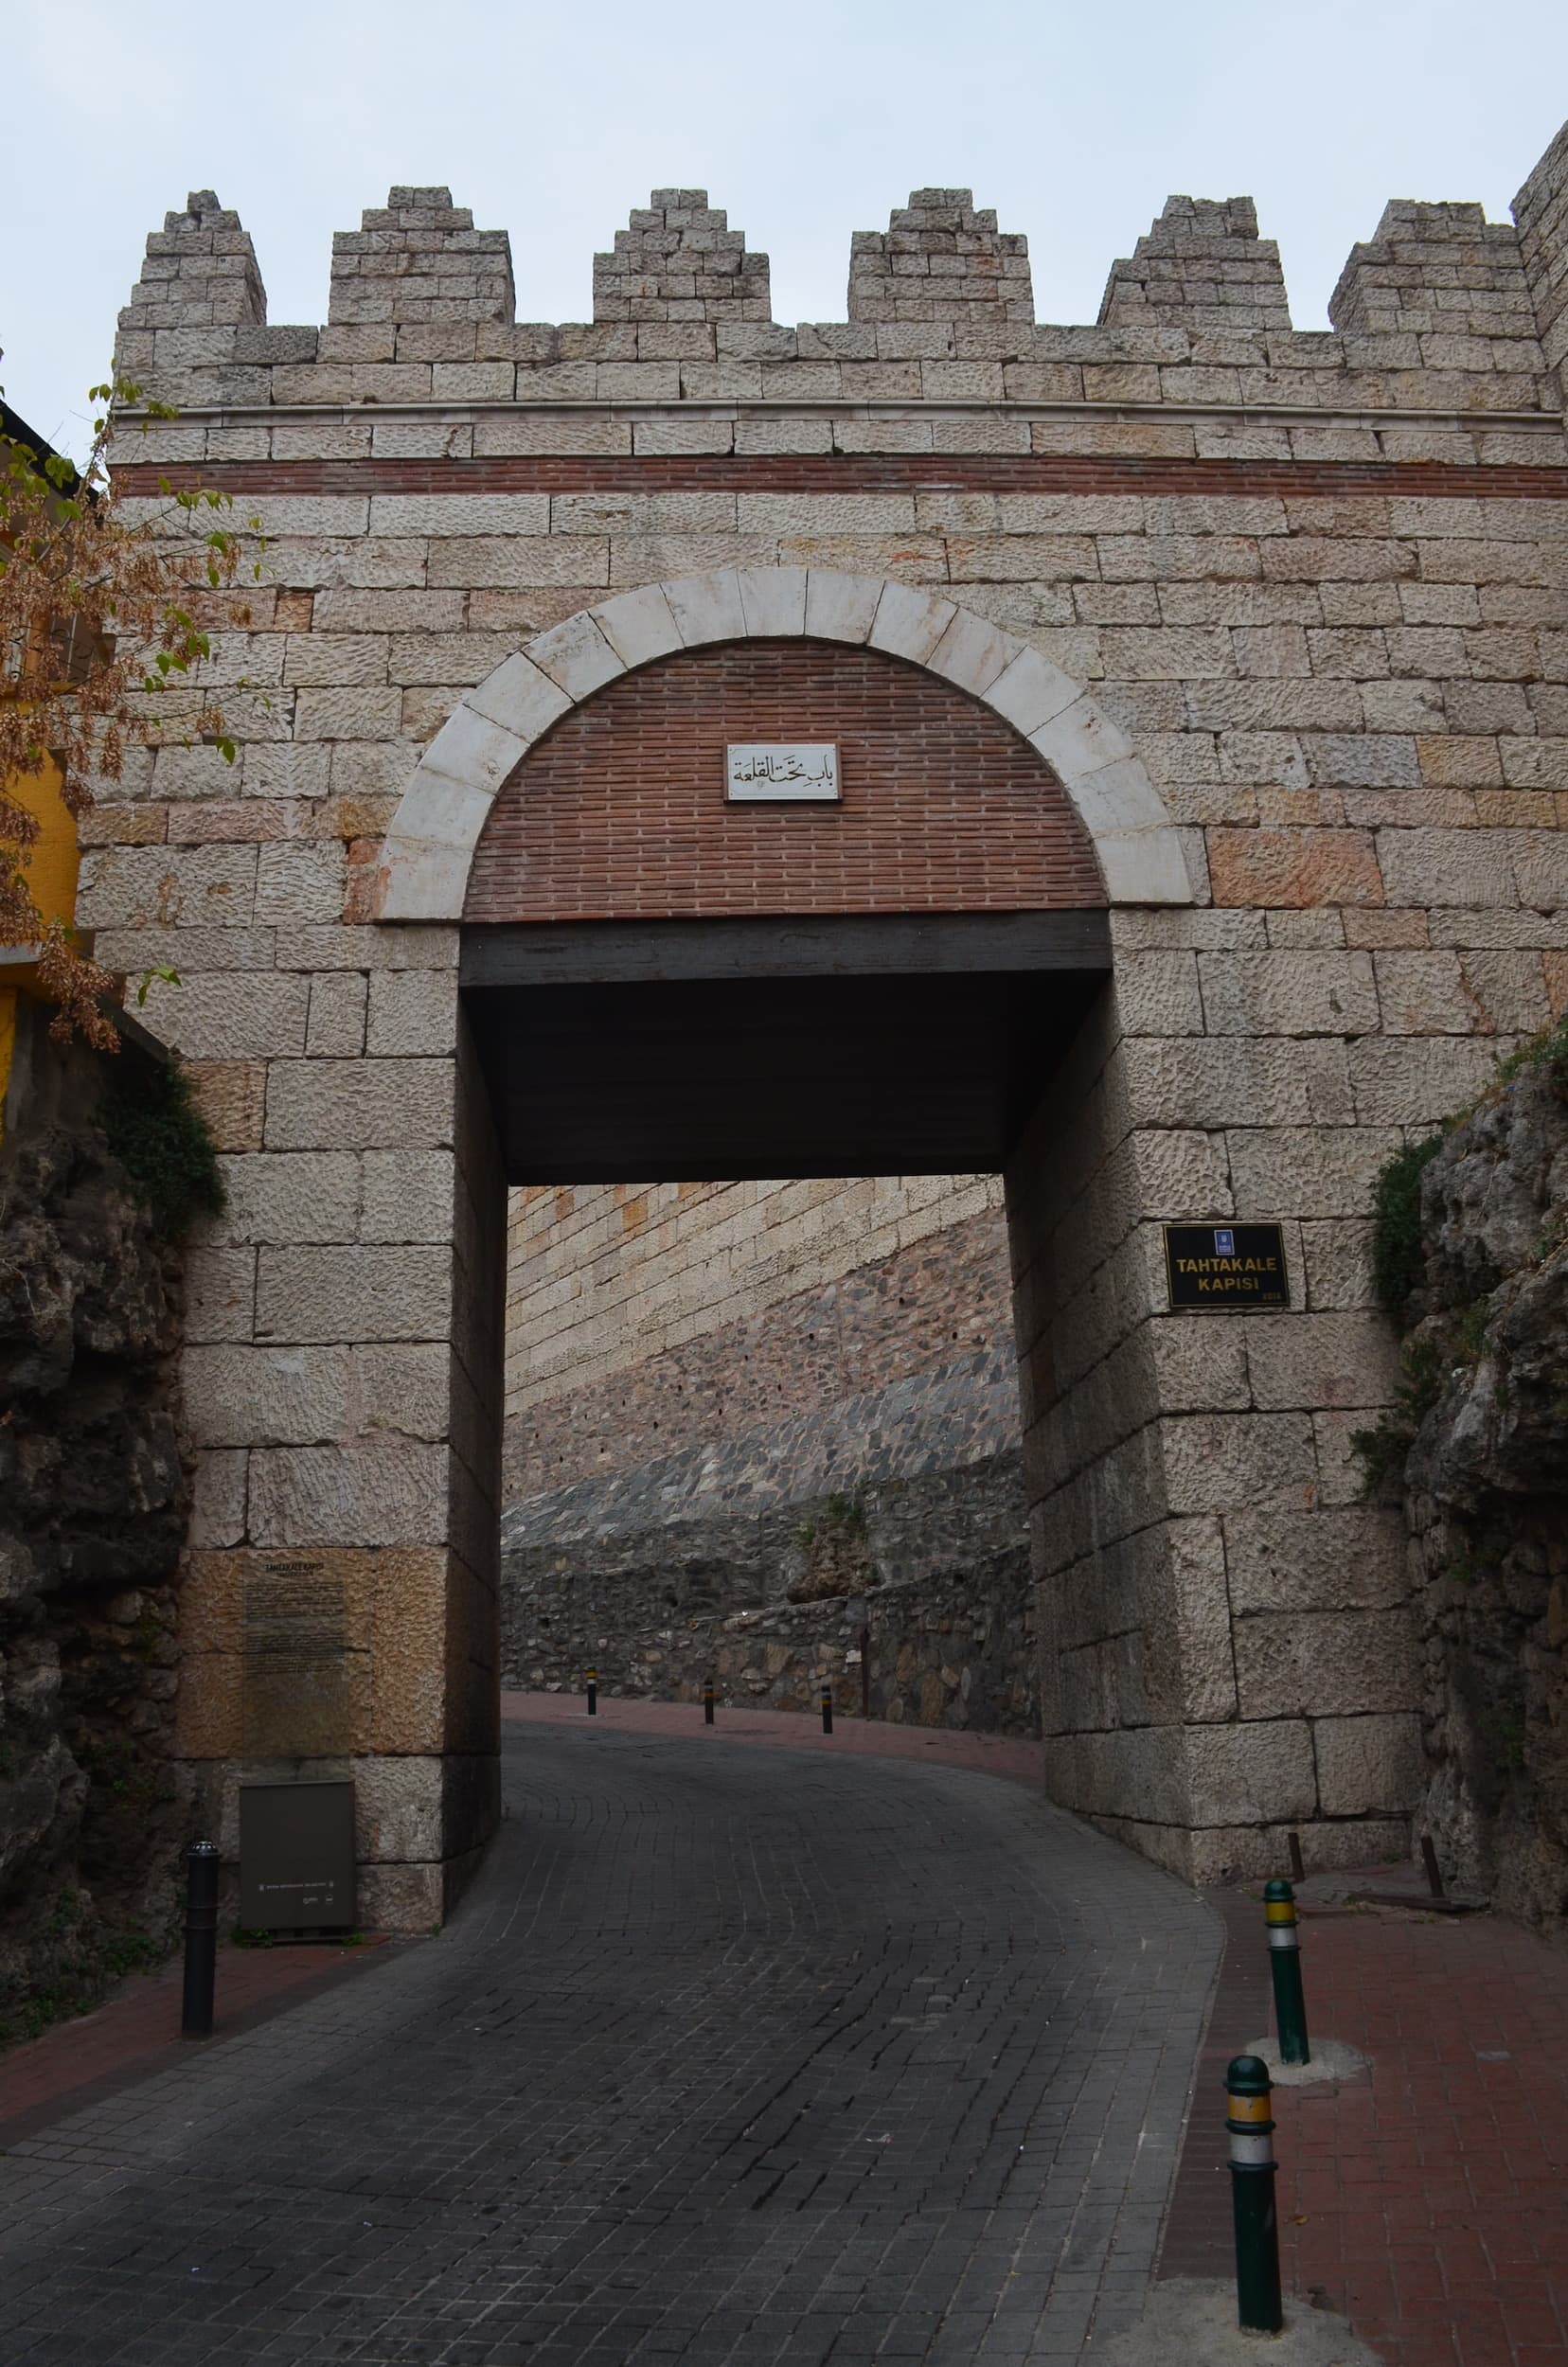 Tahtakale Gate on the walls of Bursa Castle in Bursa, Turkey